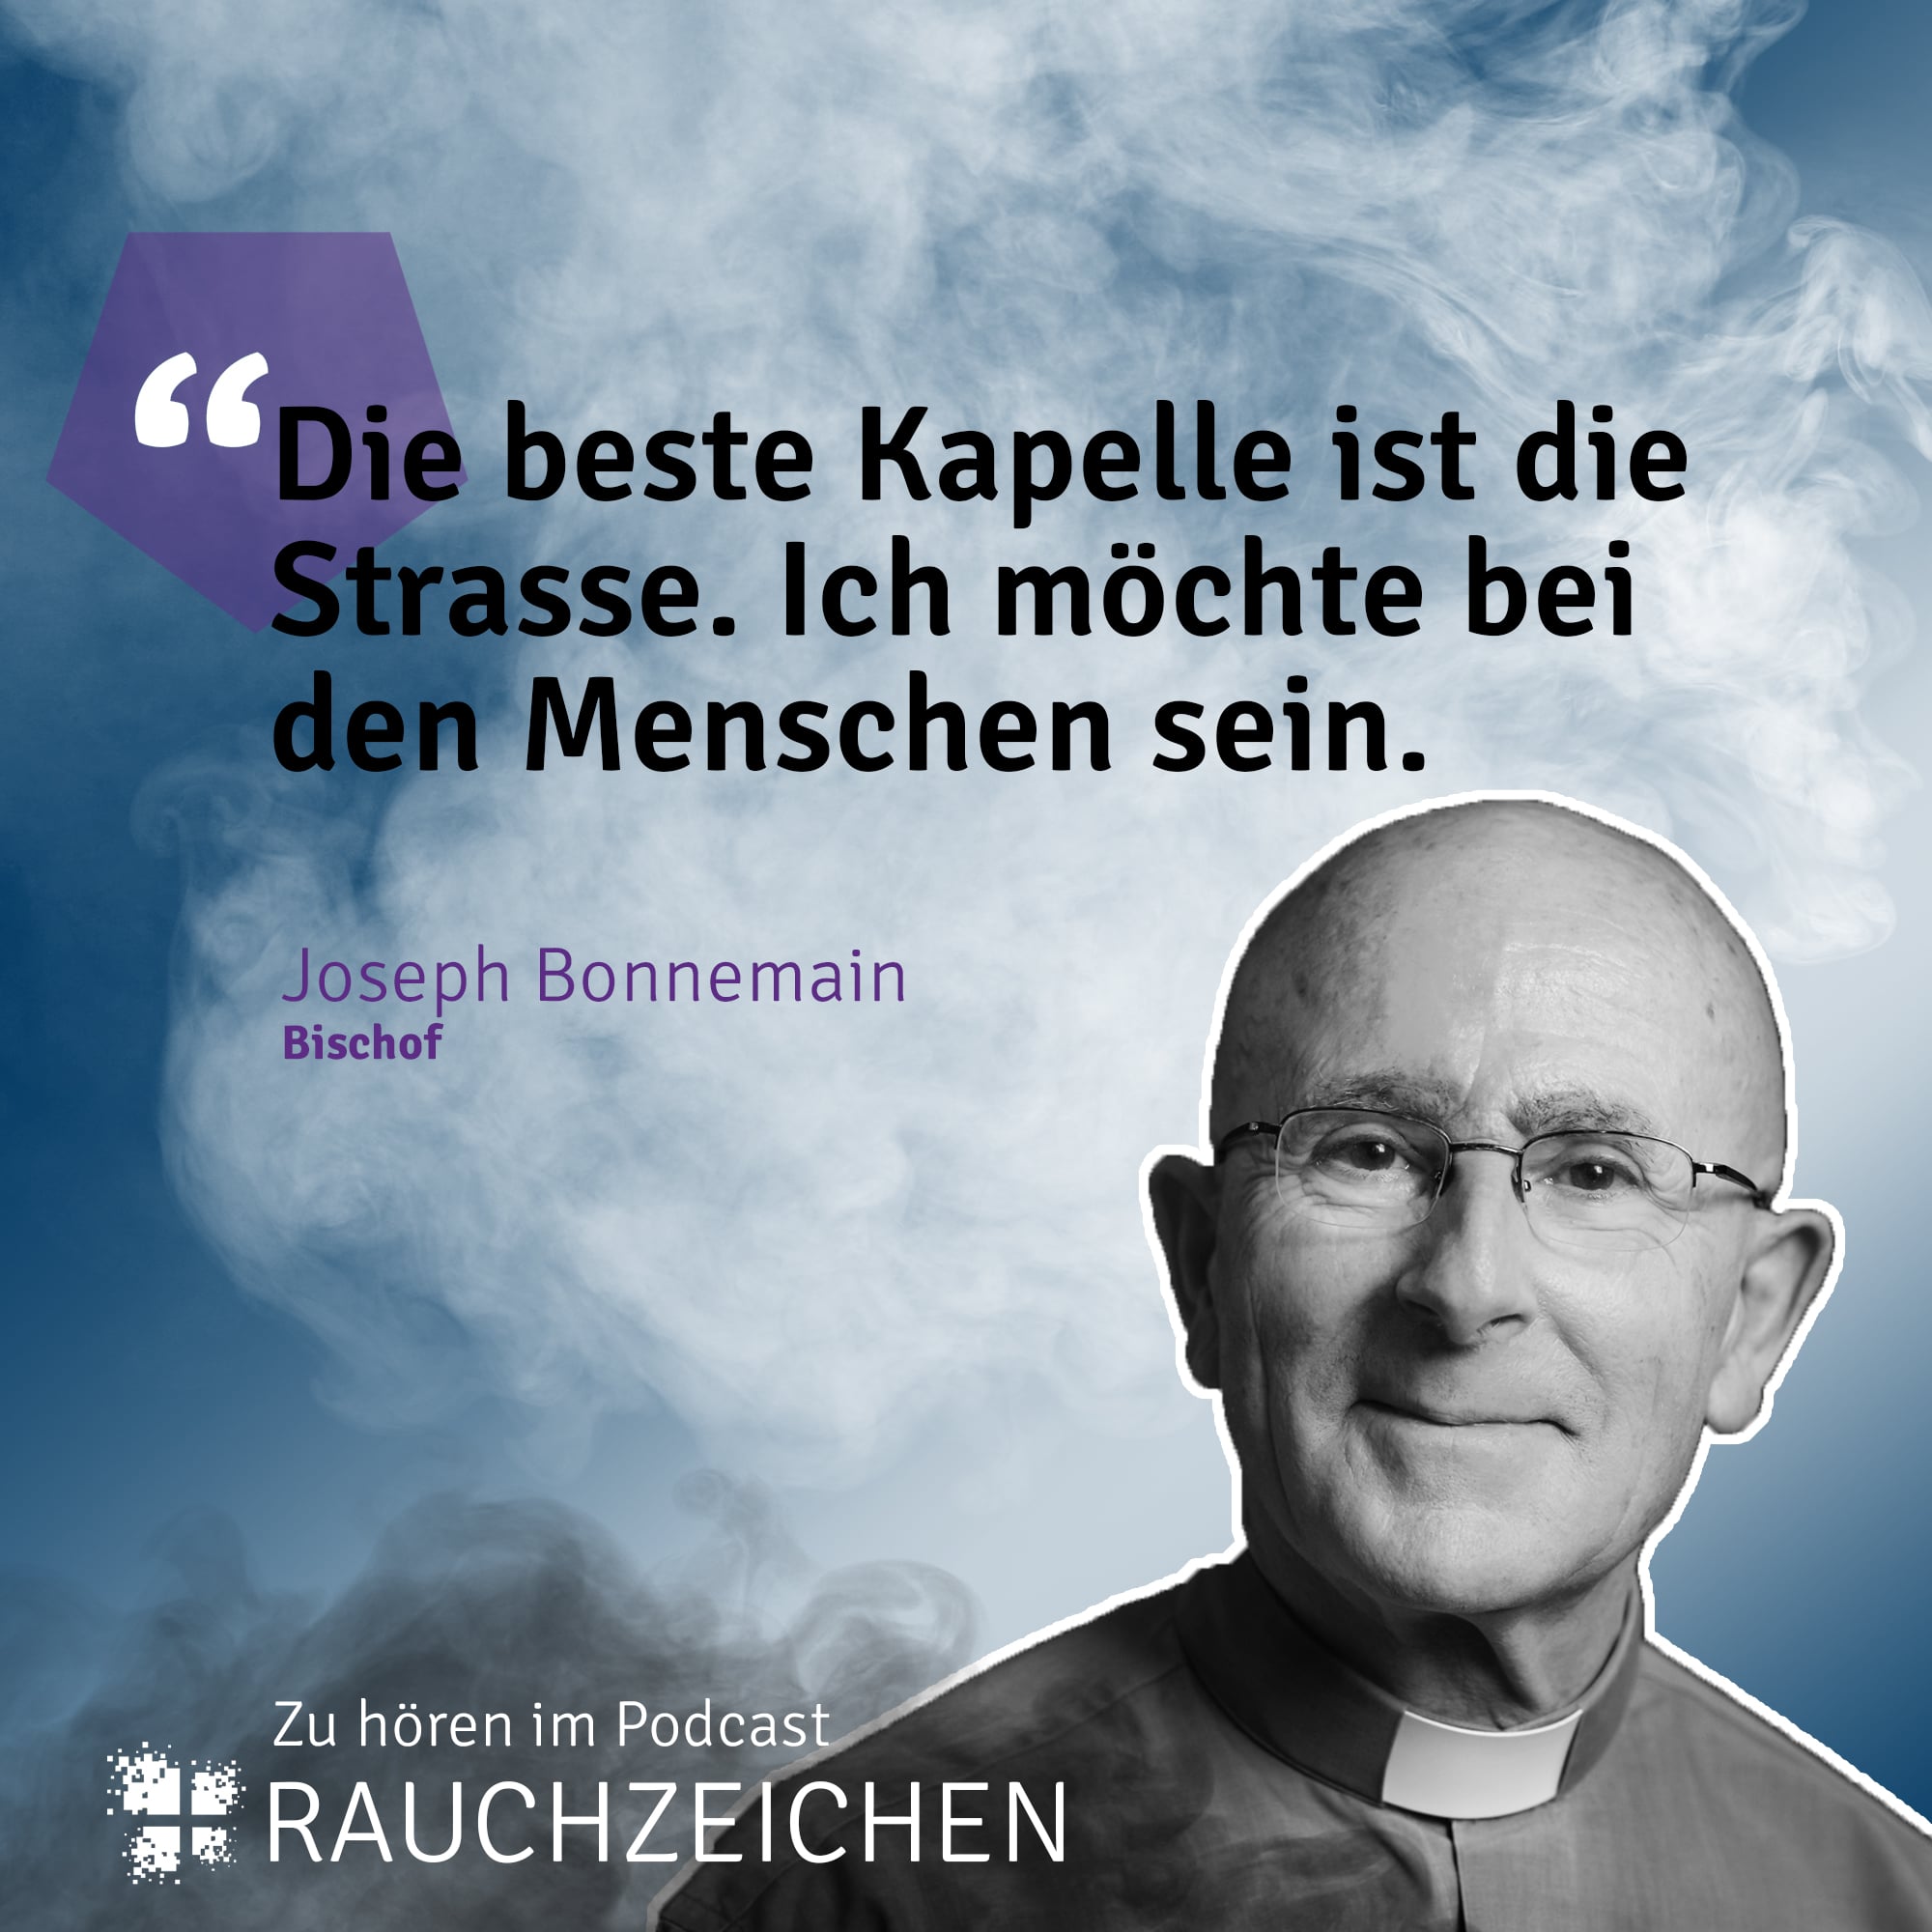 Joseph Bonnemain: «Die beste Kapelle ist die Strasse»